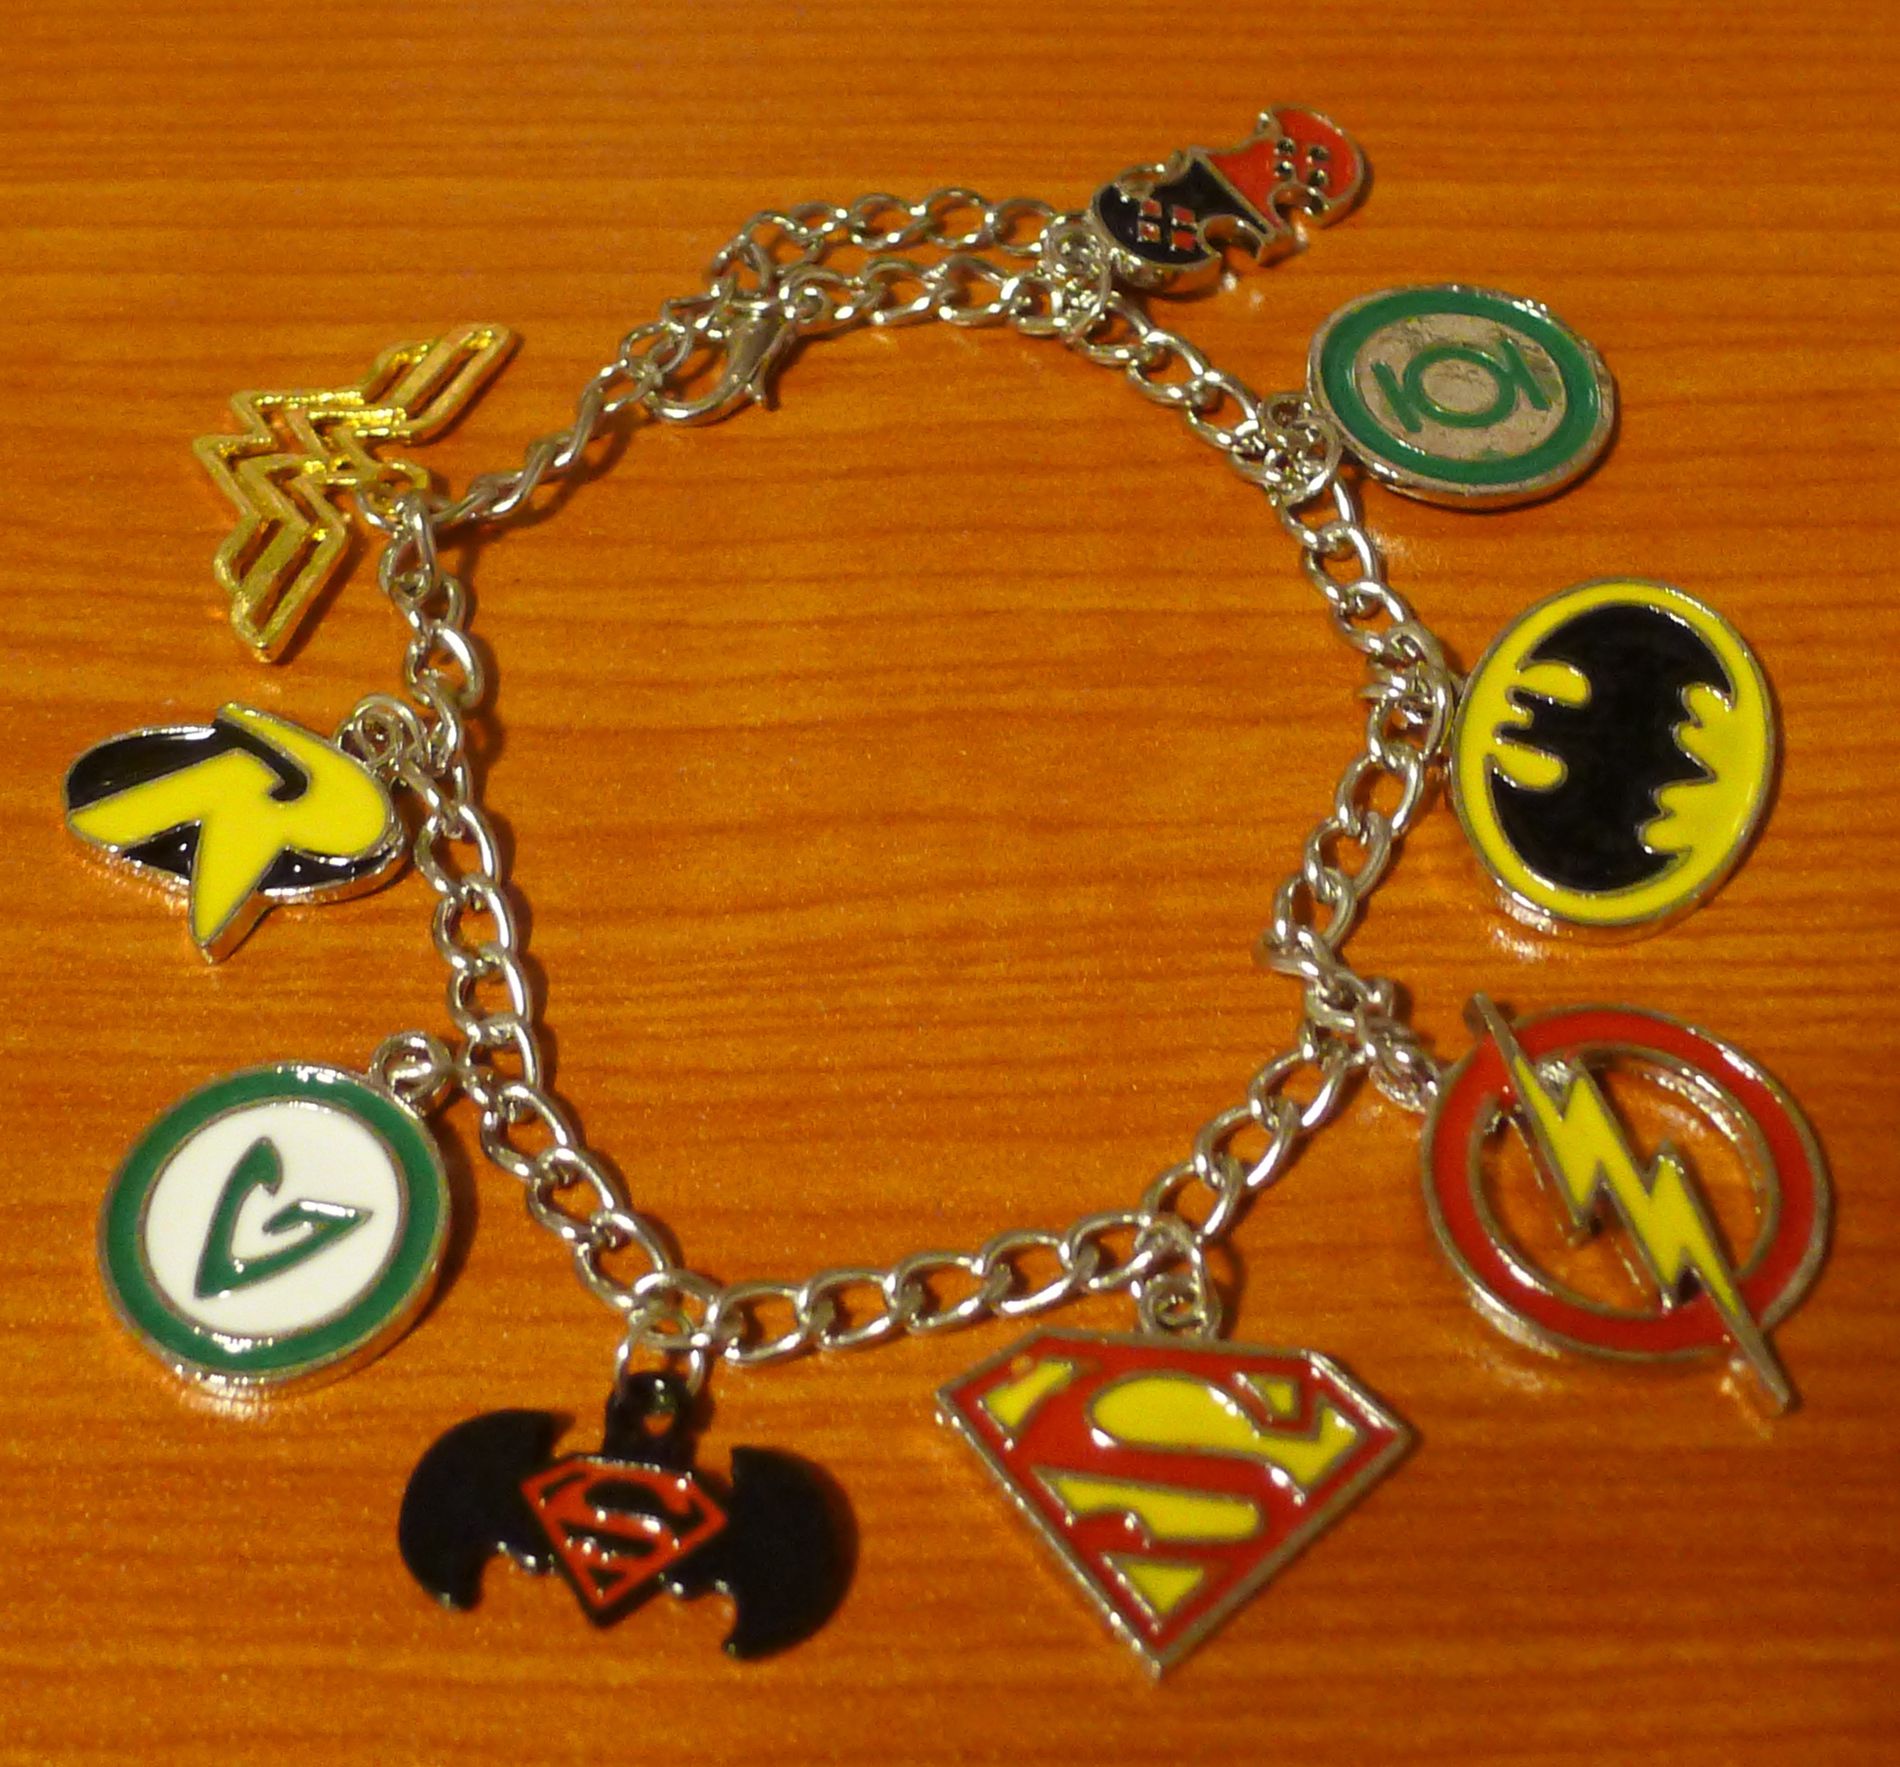 Justice League Charm Bracelet - Batman, Superman, Wonder Woman, etc